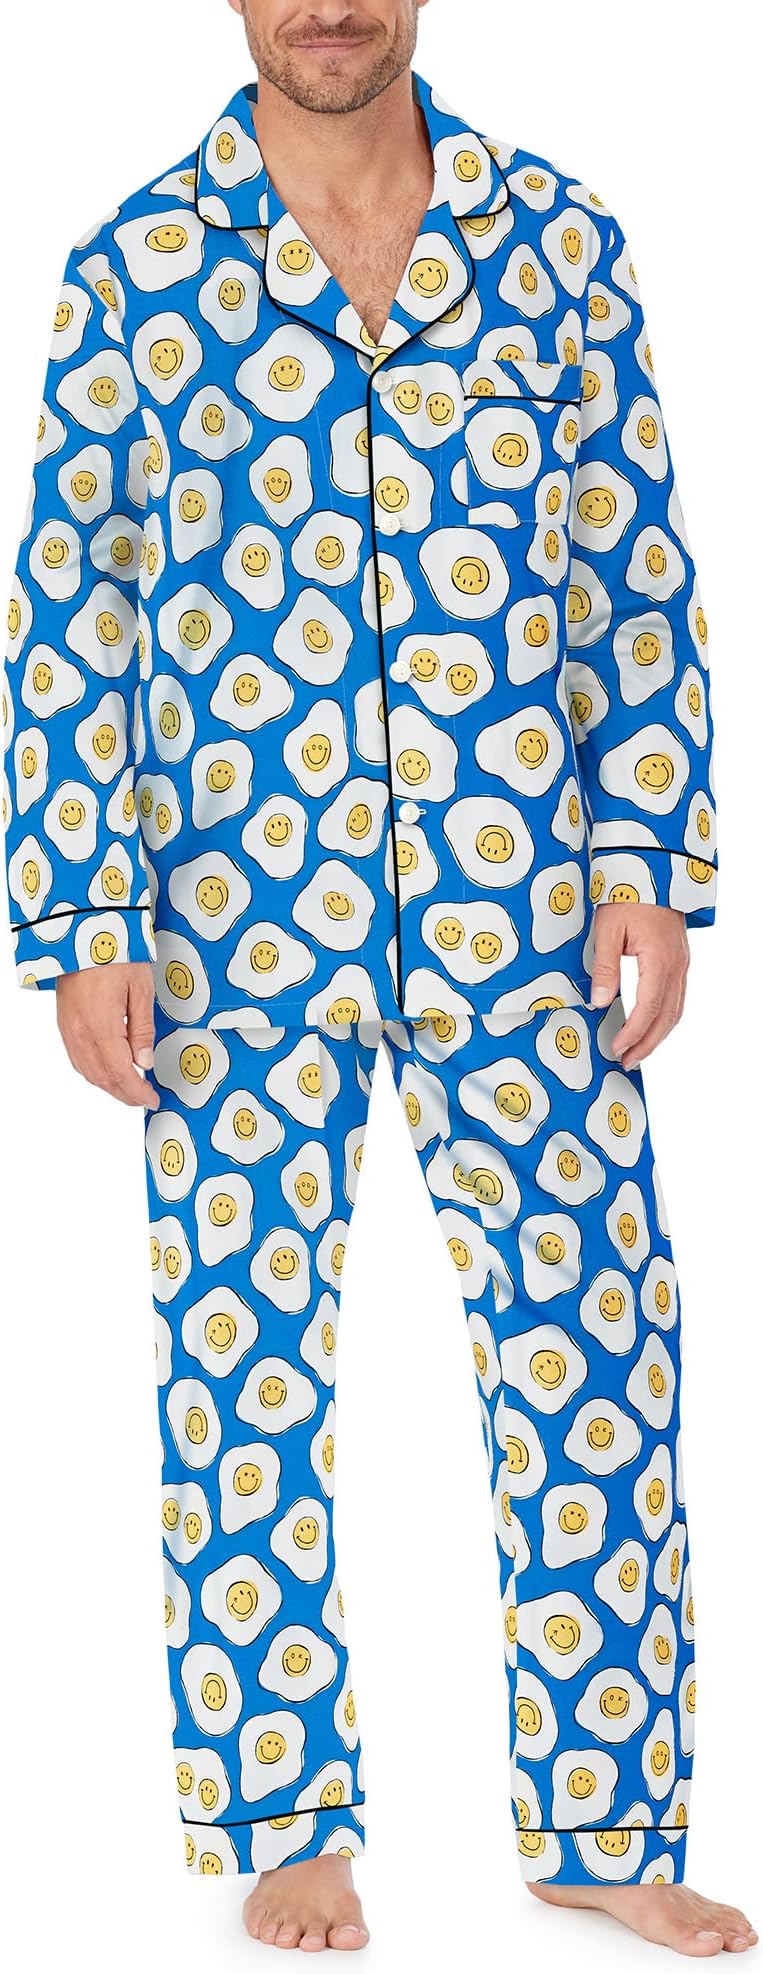 Zappos Print Lab: классический пижамный комплект с длинными рукавами Sunny Side Up Bedhead PJs, цвет Sunny Side Up пижамный комплект bedhead pjs zappos print lab sunny side up pj set цвет sunny side up